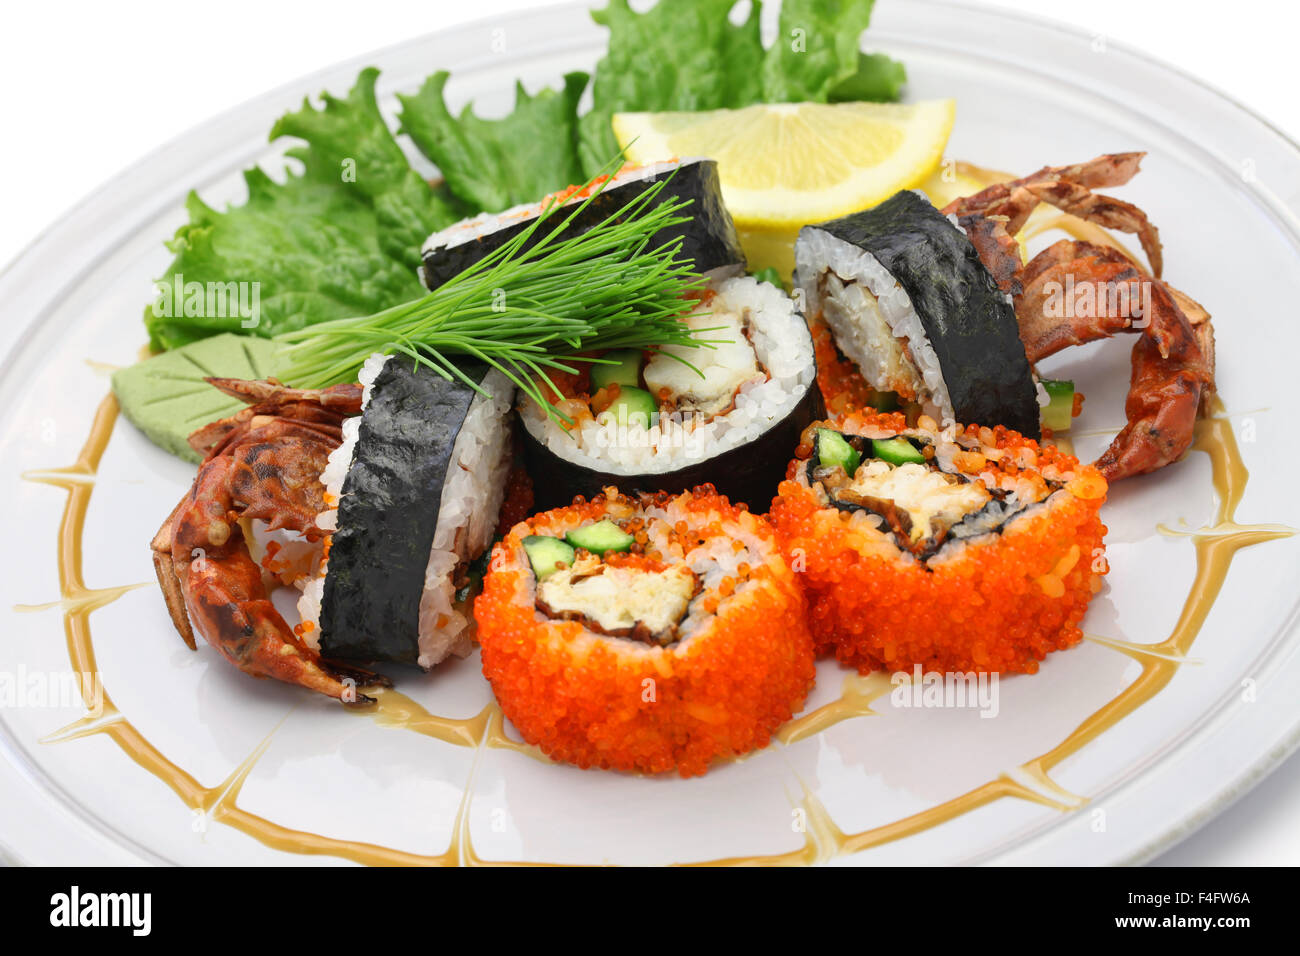 Rouleau de sushi maki, araignée faite de tempura de crabe blanc et du riz à sushi, Halloween party le dîner Banque D'Images